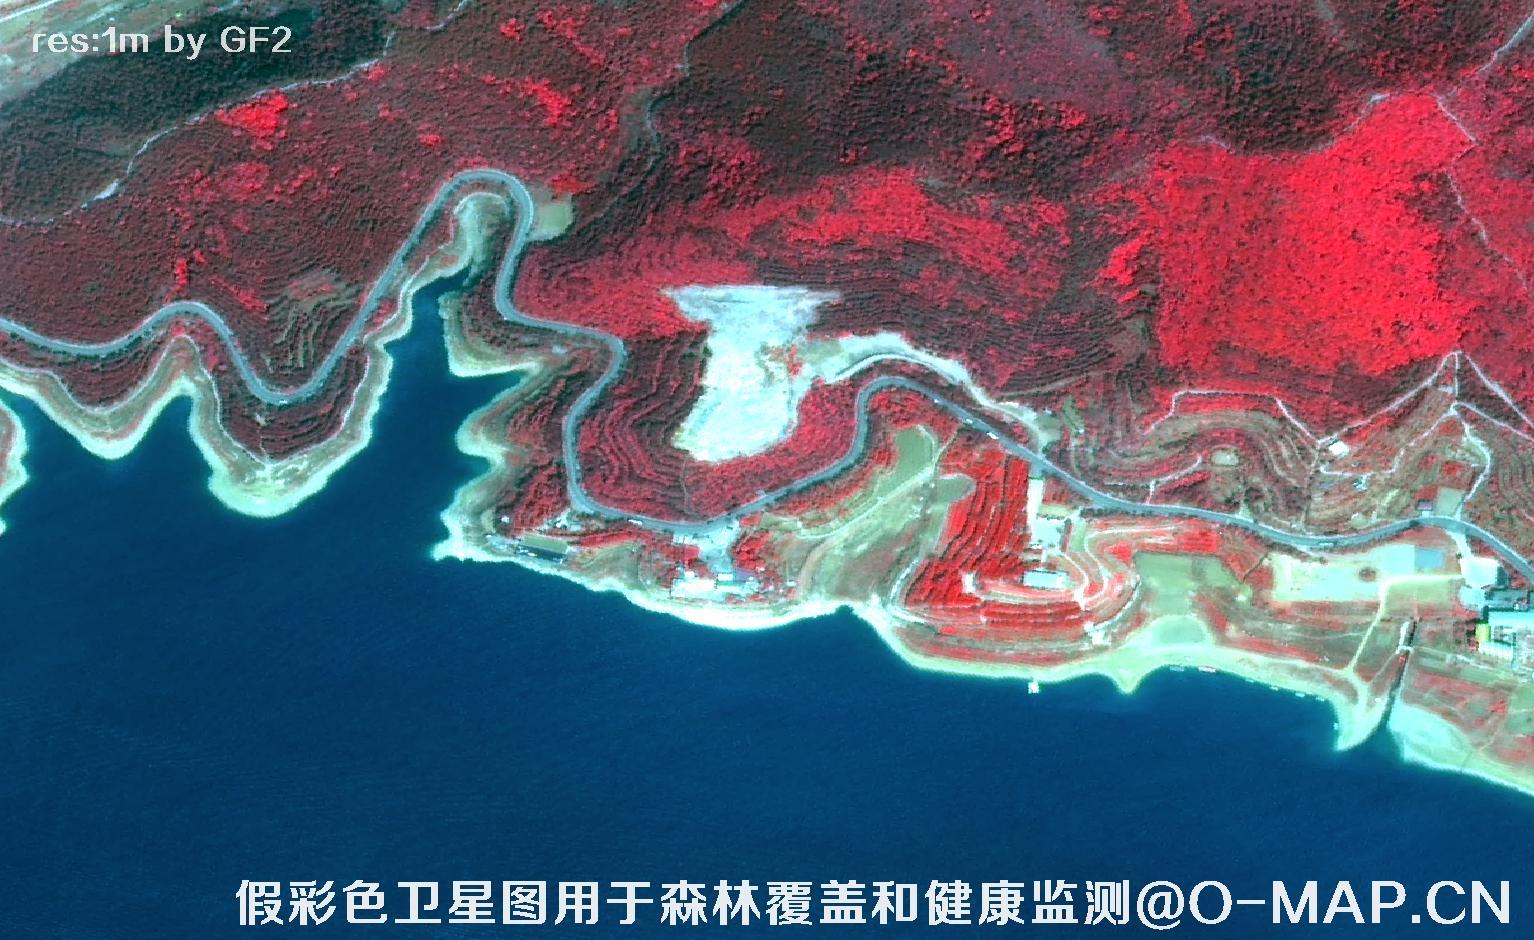 高分二号卫星假彩色影像图用于平谷林区覆盖和健康监测